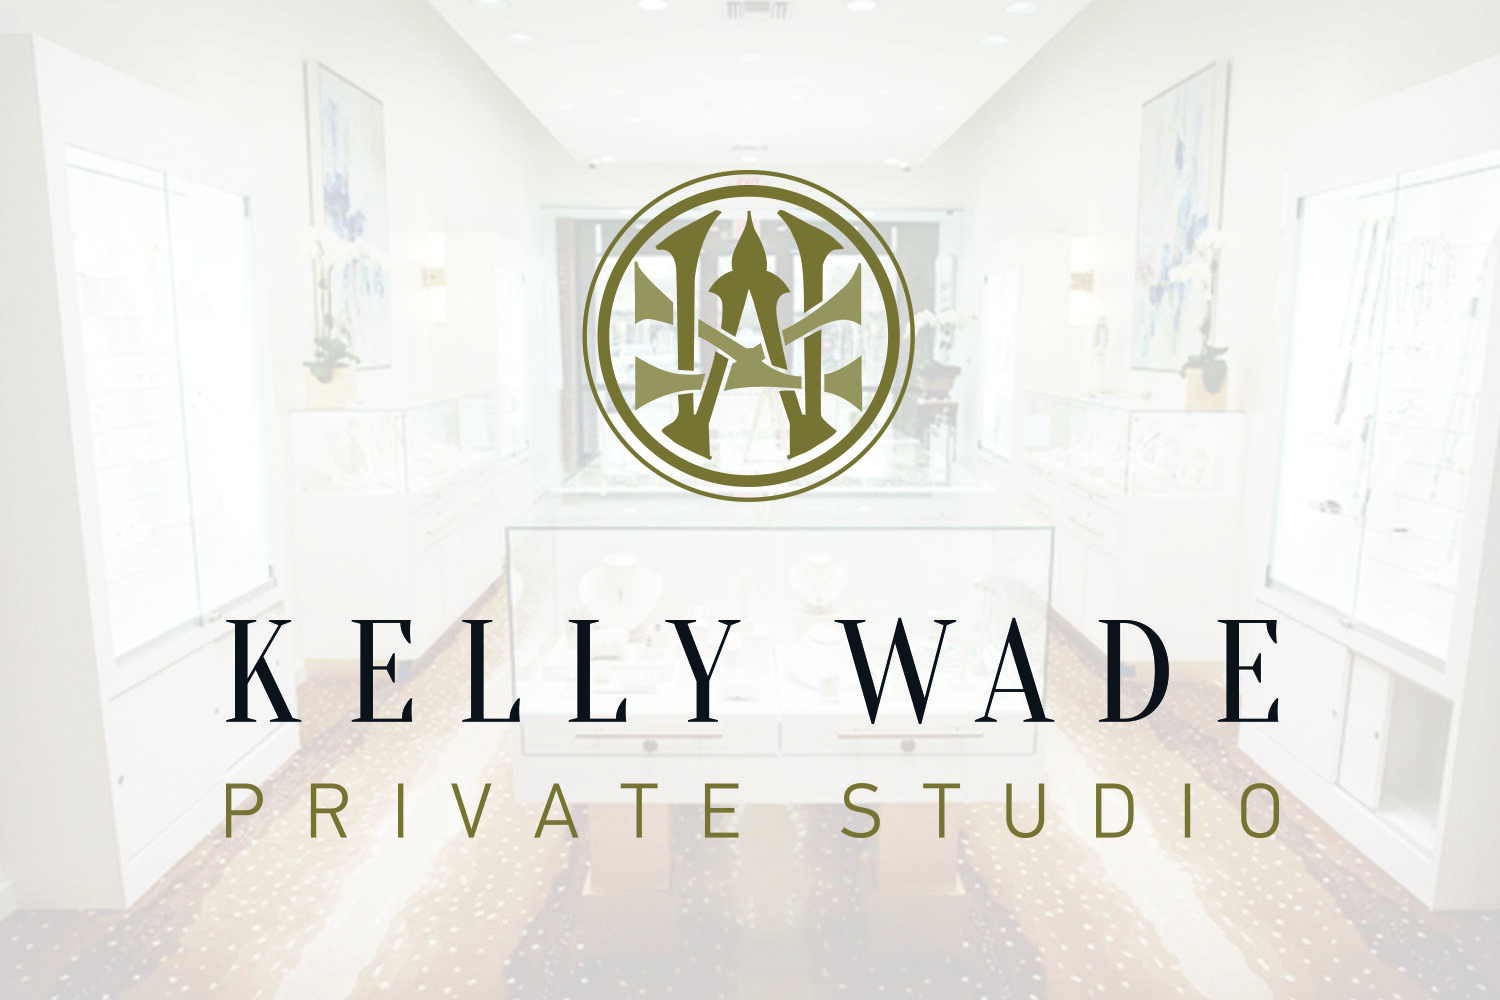 KW_PrivateStudio_KellyWade (1).jpg